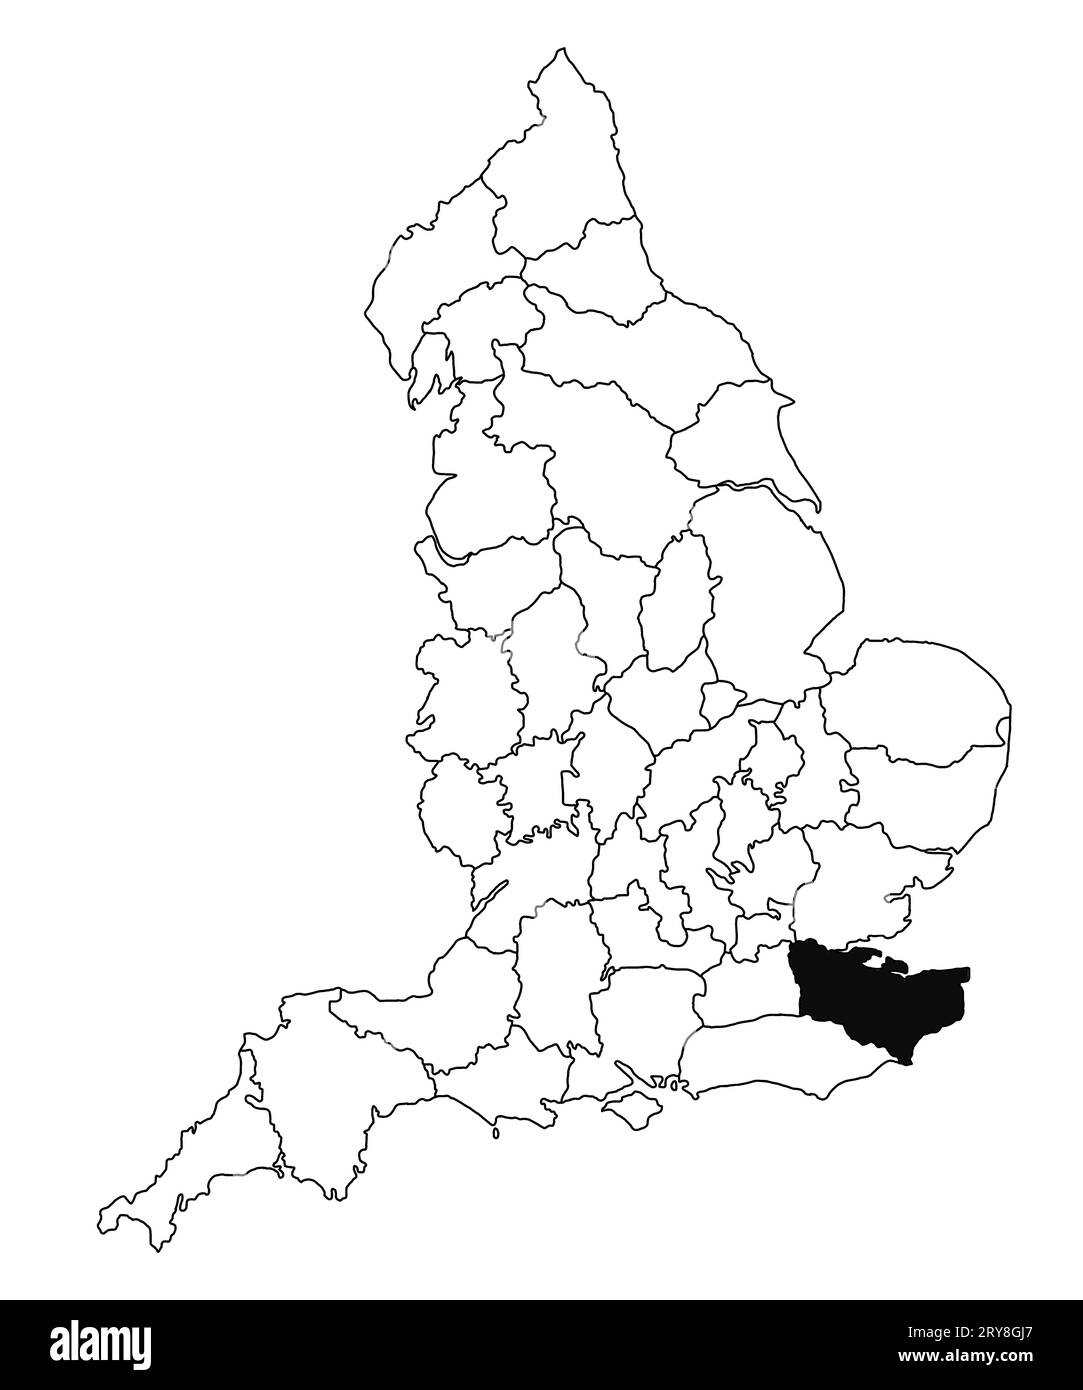 Carte du comté de Kent en Angleterre sur fond blanc. Carte du comté unique mise en évidence en noir sur la carte administrative de l'Angleterre.. Royaume-Uni, BRITA Banque D'Images